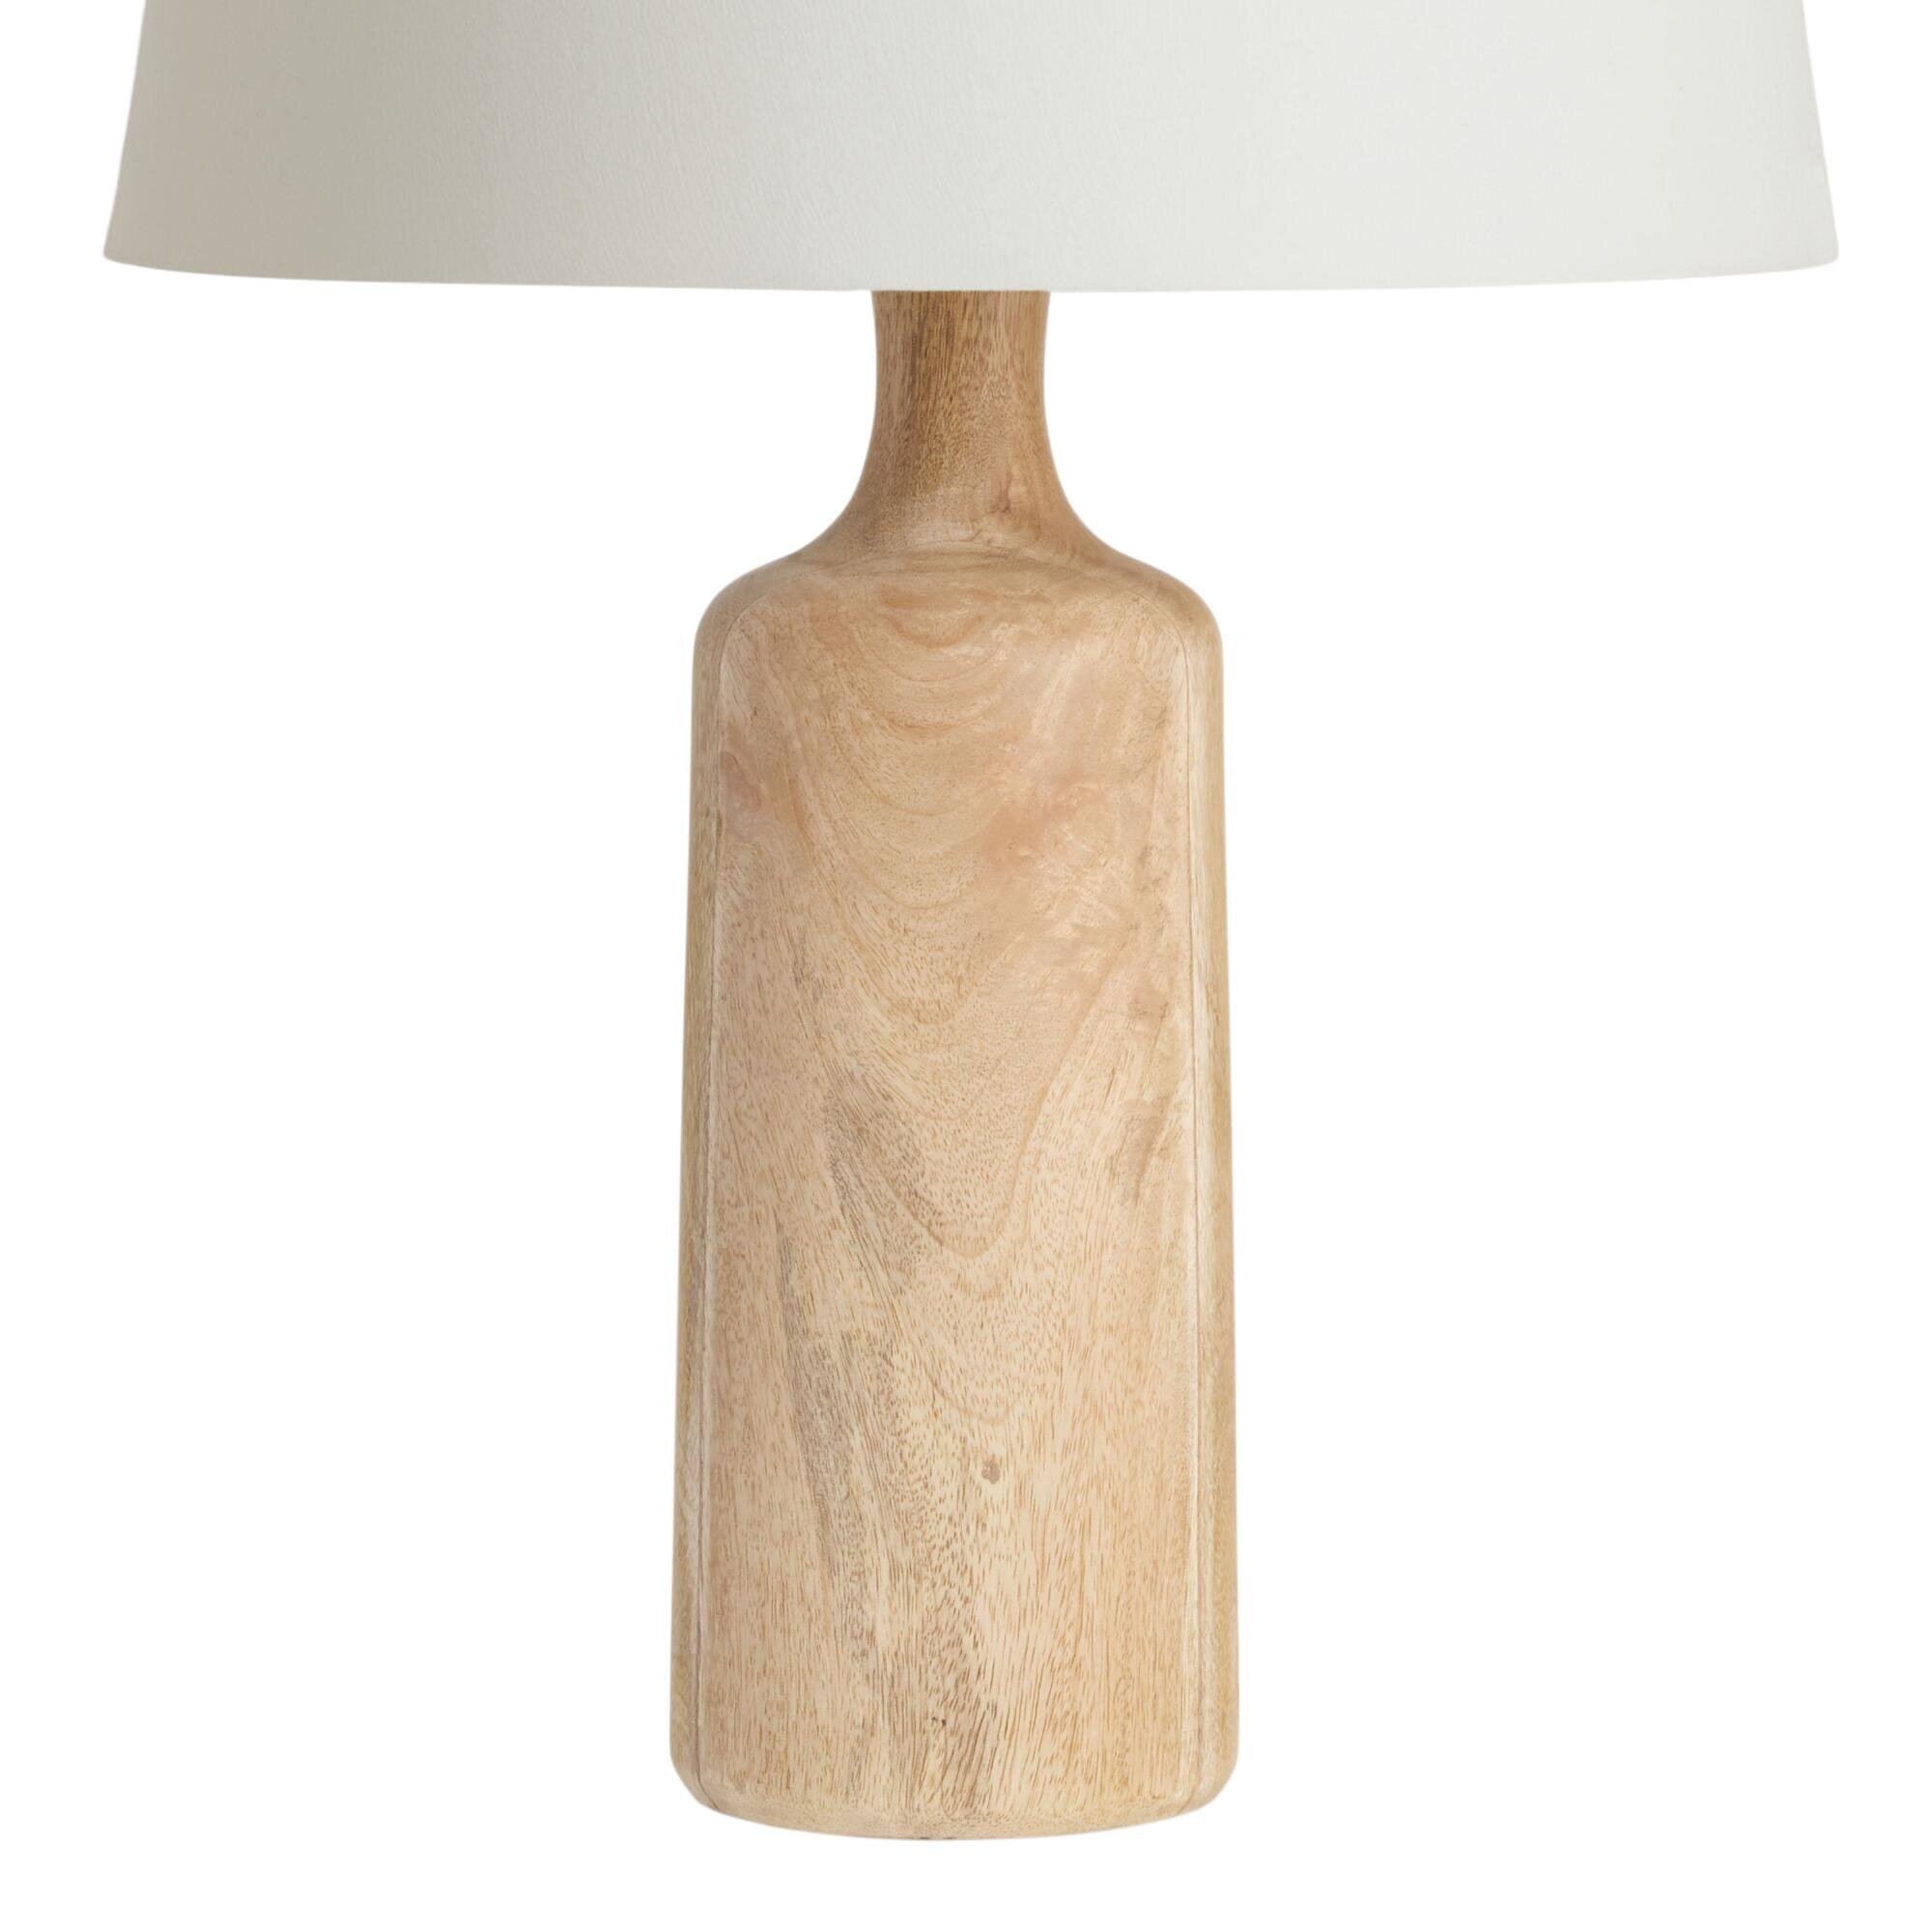 natural wood table lamp base